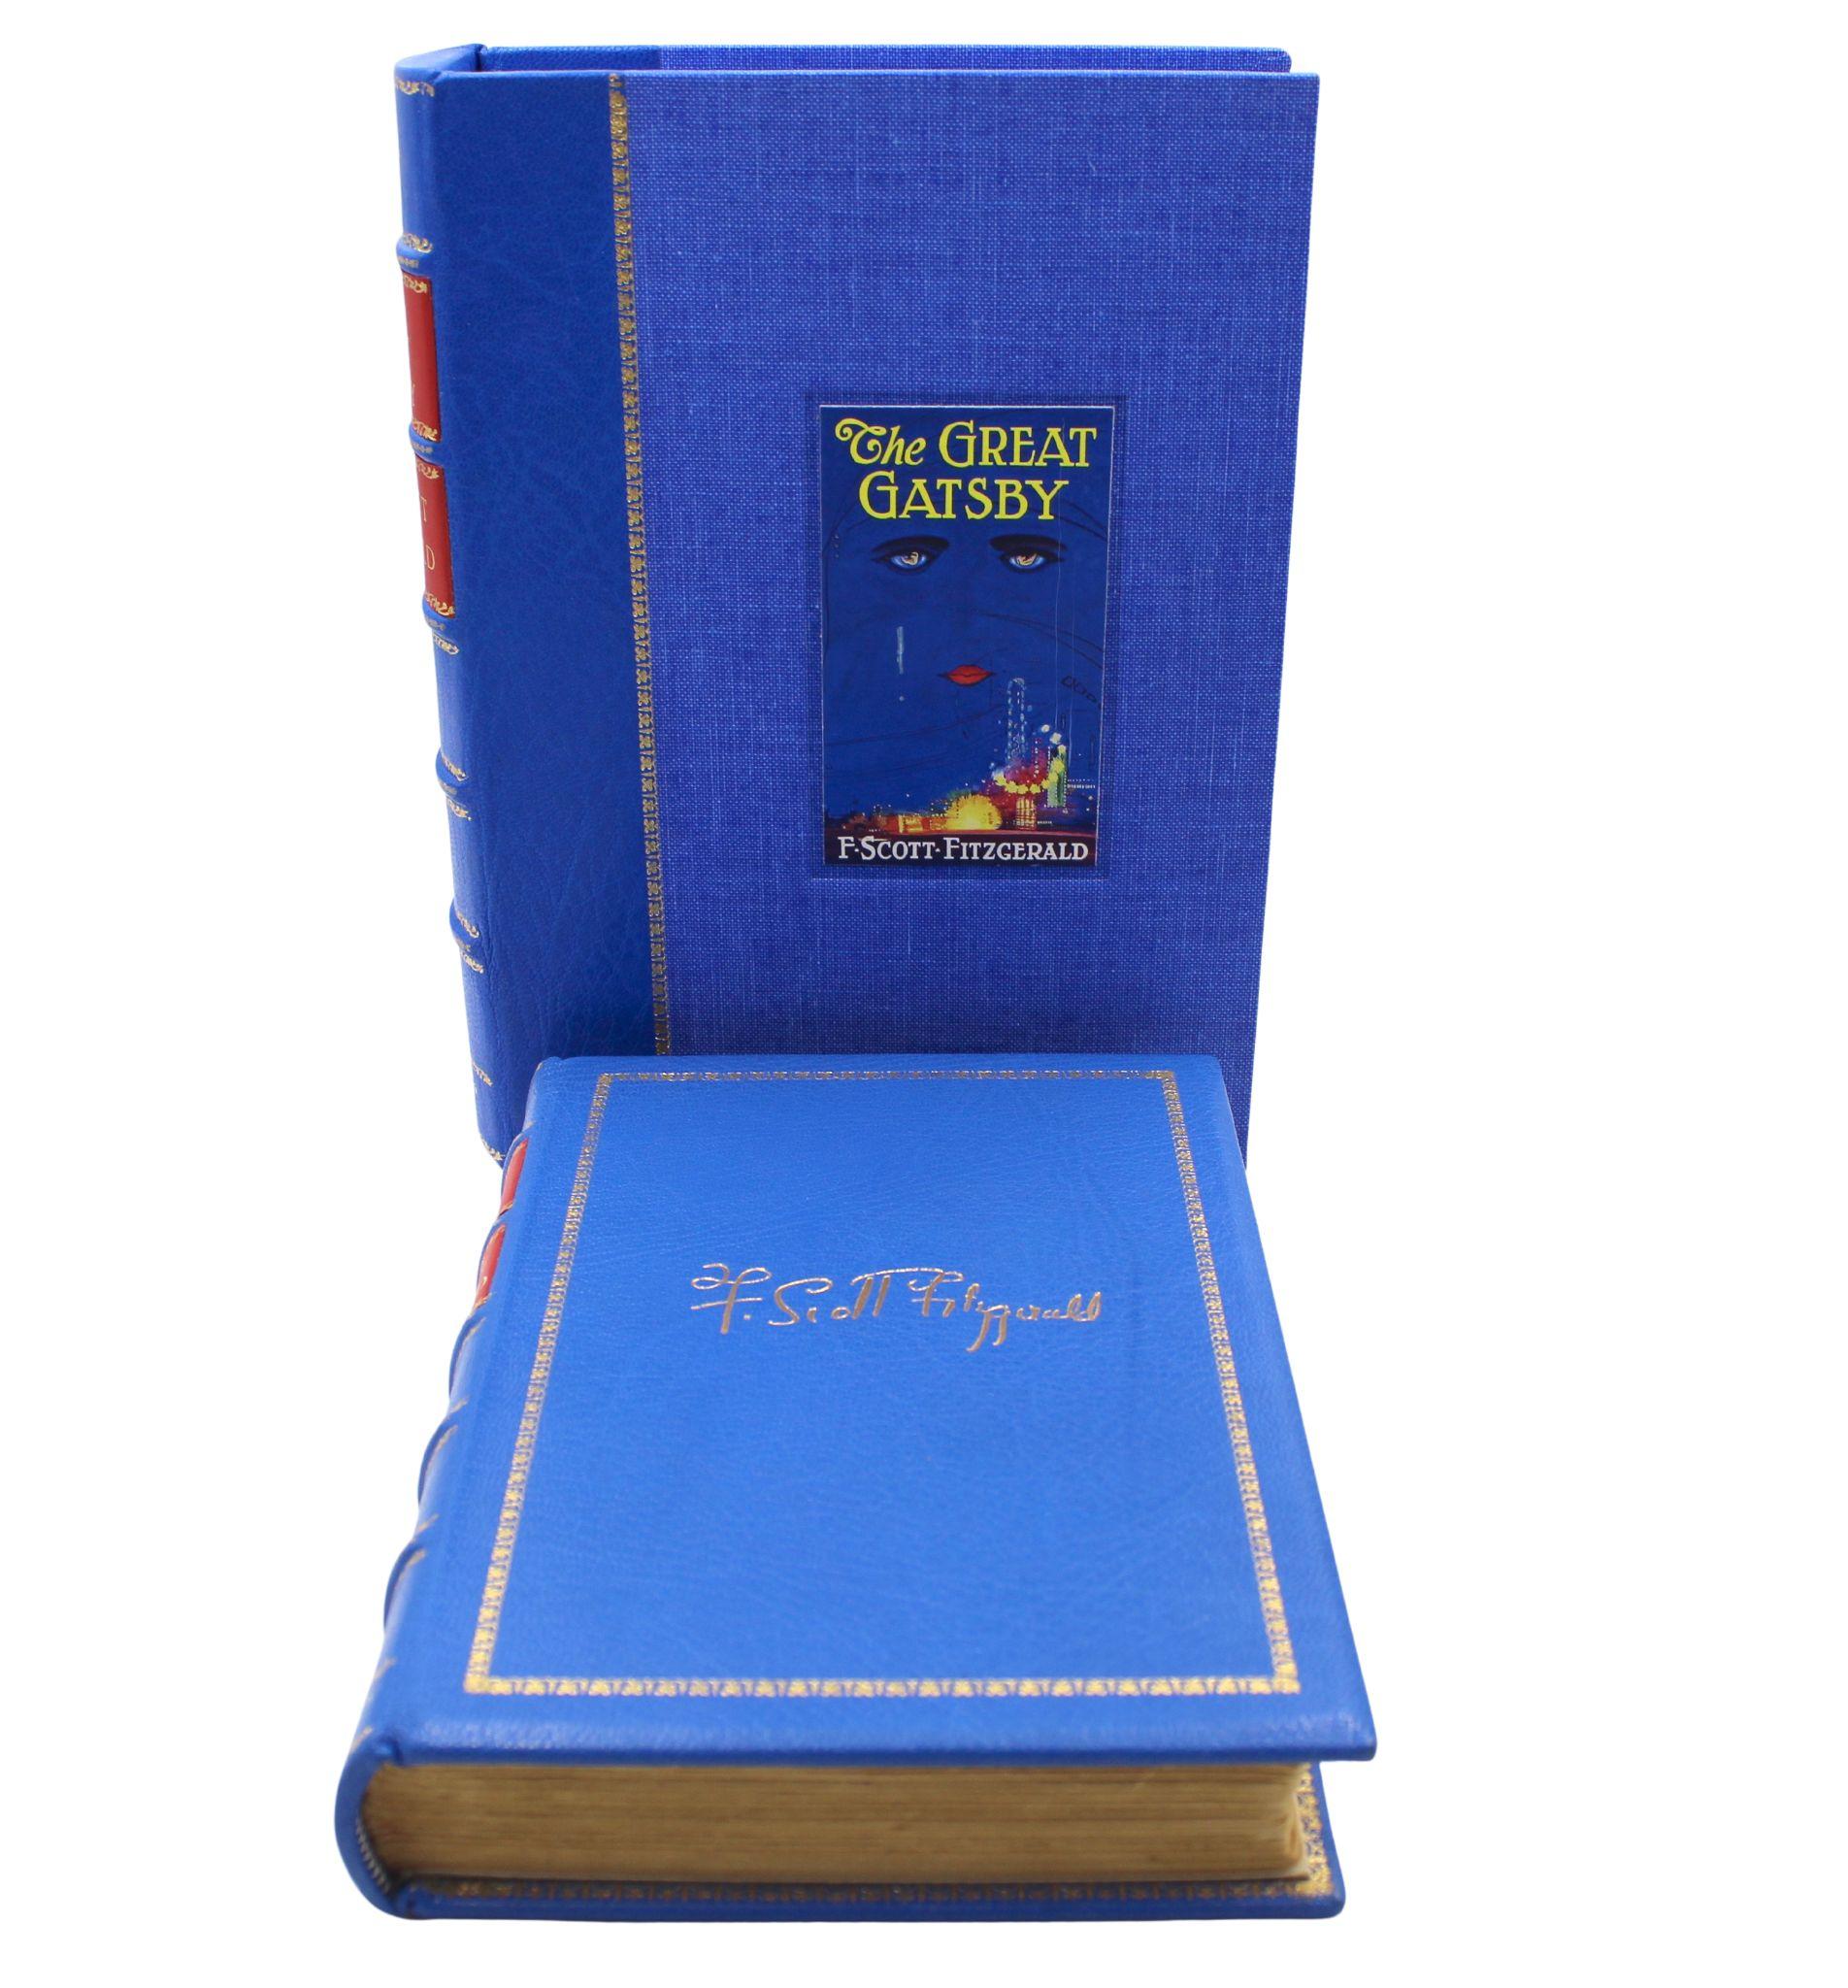 Fitzgerald, F. Scott, Le grand Gatsby. New York : Charles Scribner's Sons, 1925. Première édition, première impression. Relié en plein maroquin bleu avec marquage doré, bandes en relief et marquage doré au dos, et un ¼ de pochette en cuir bleu et